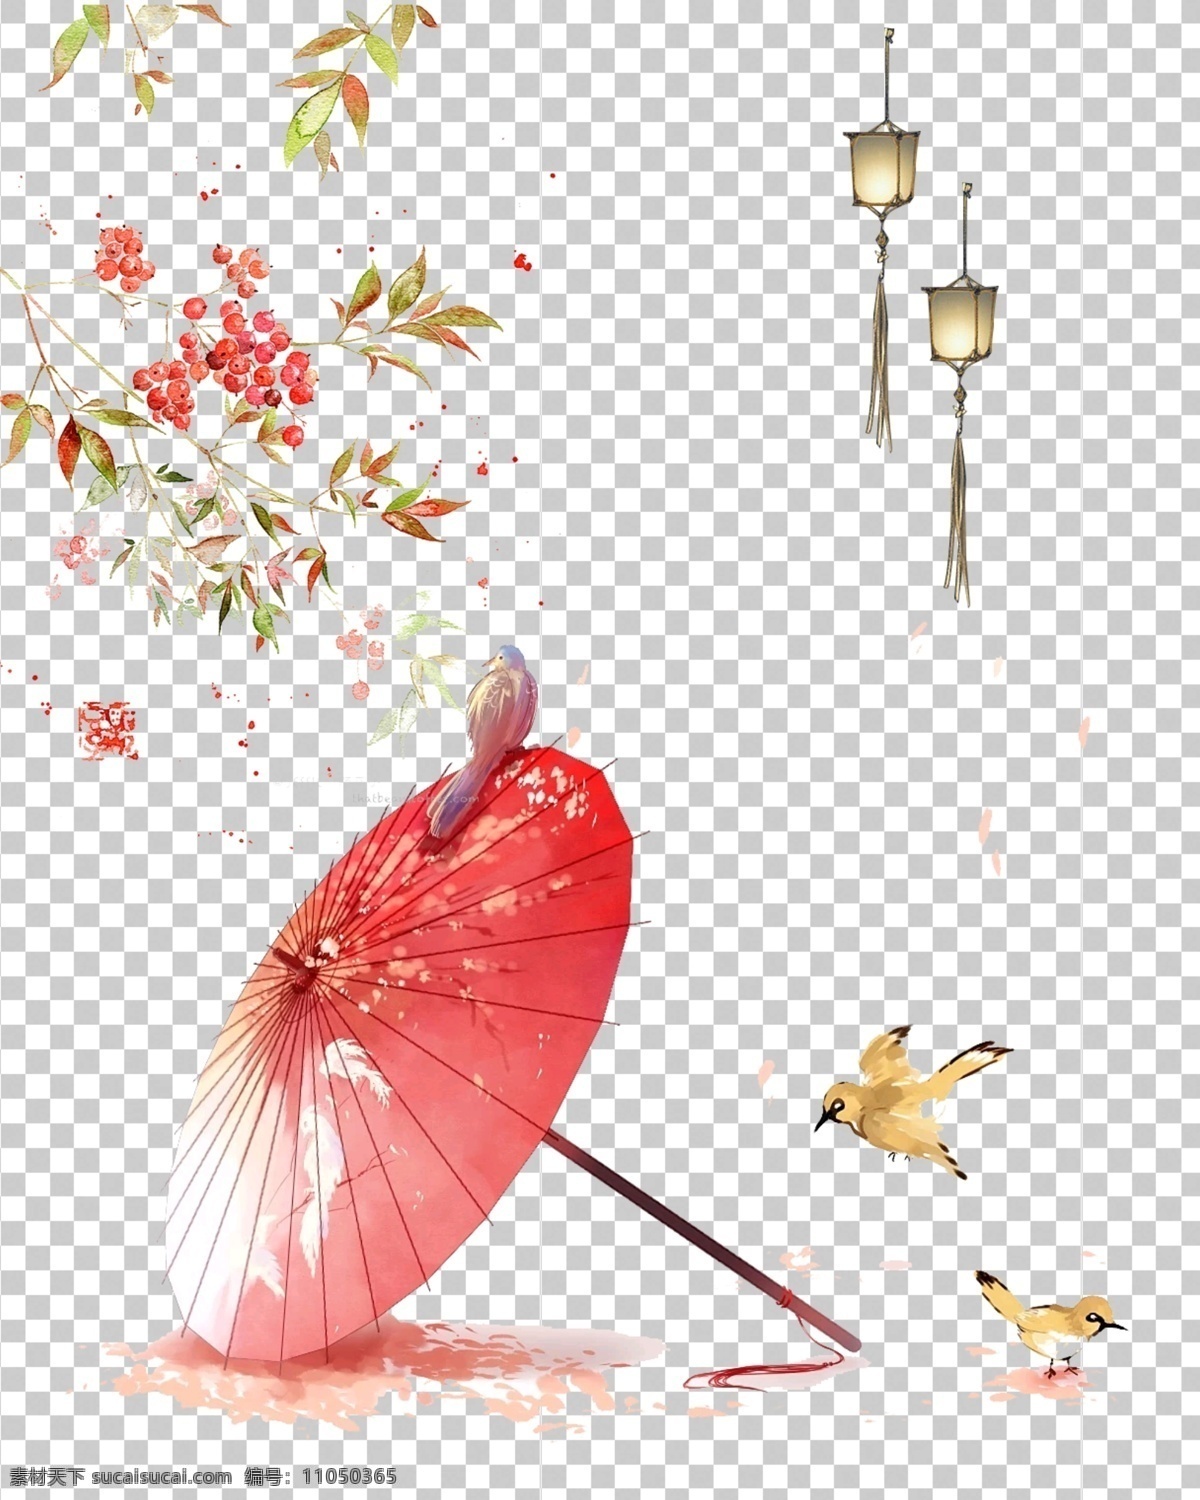 雨伞图片 雨伞 古风 小鸟 桃花 透明底 免抠图 分层图 分层